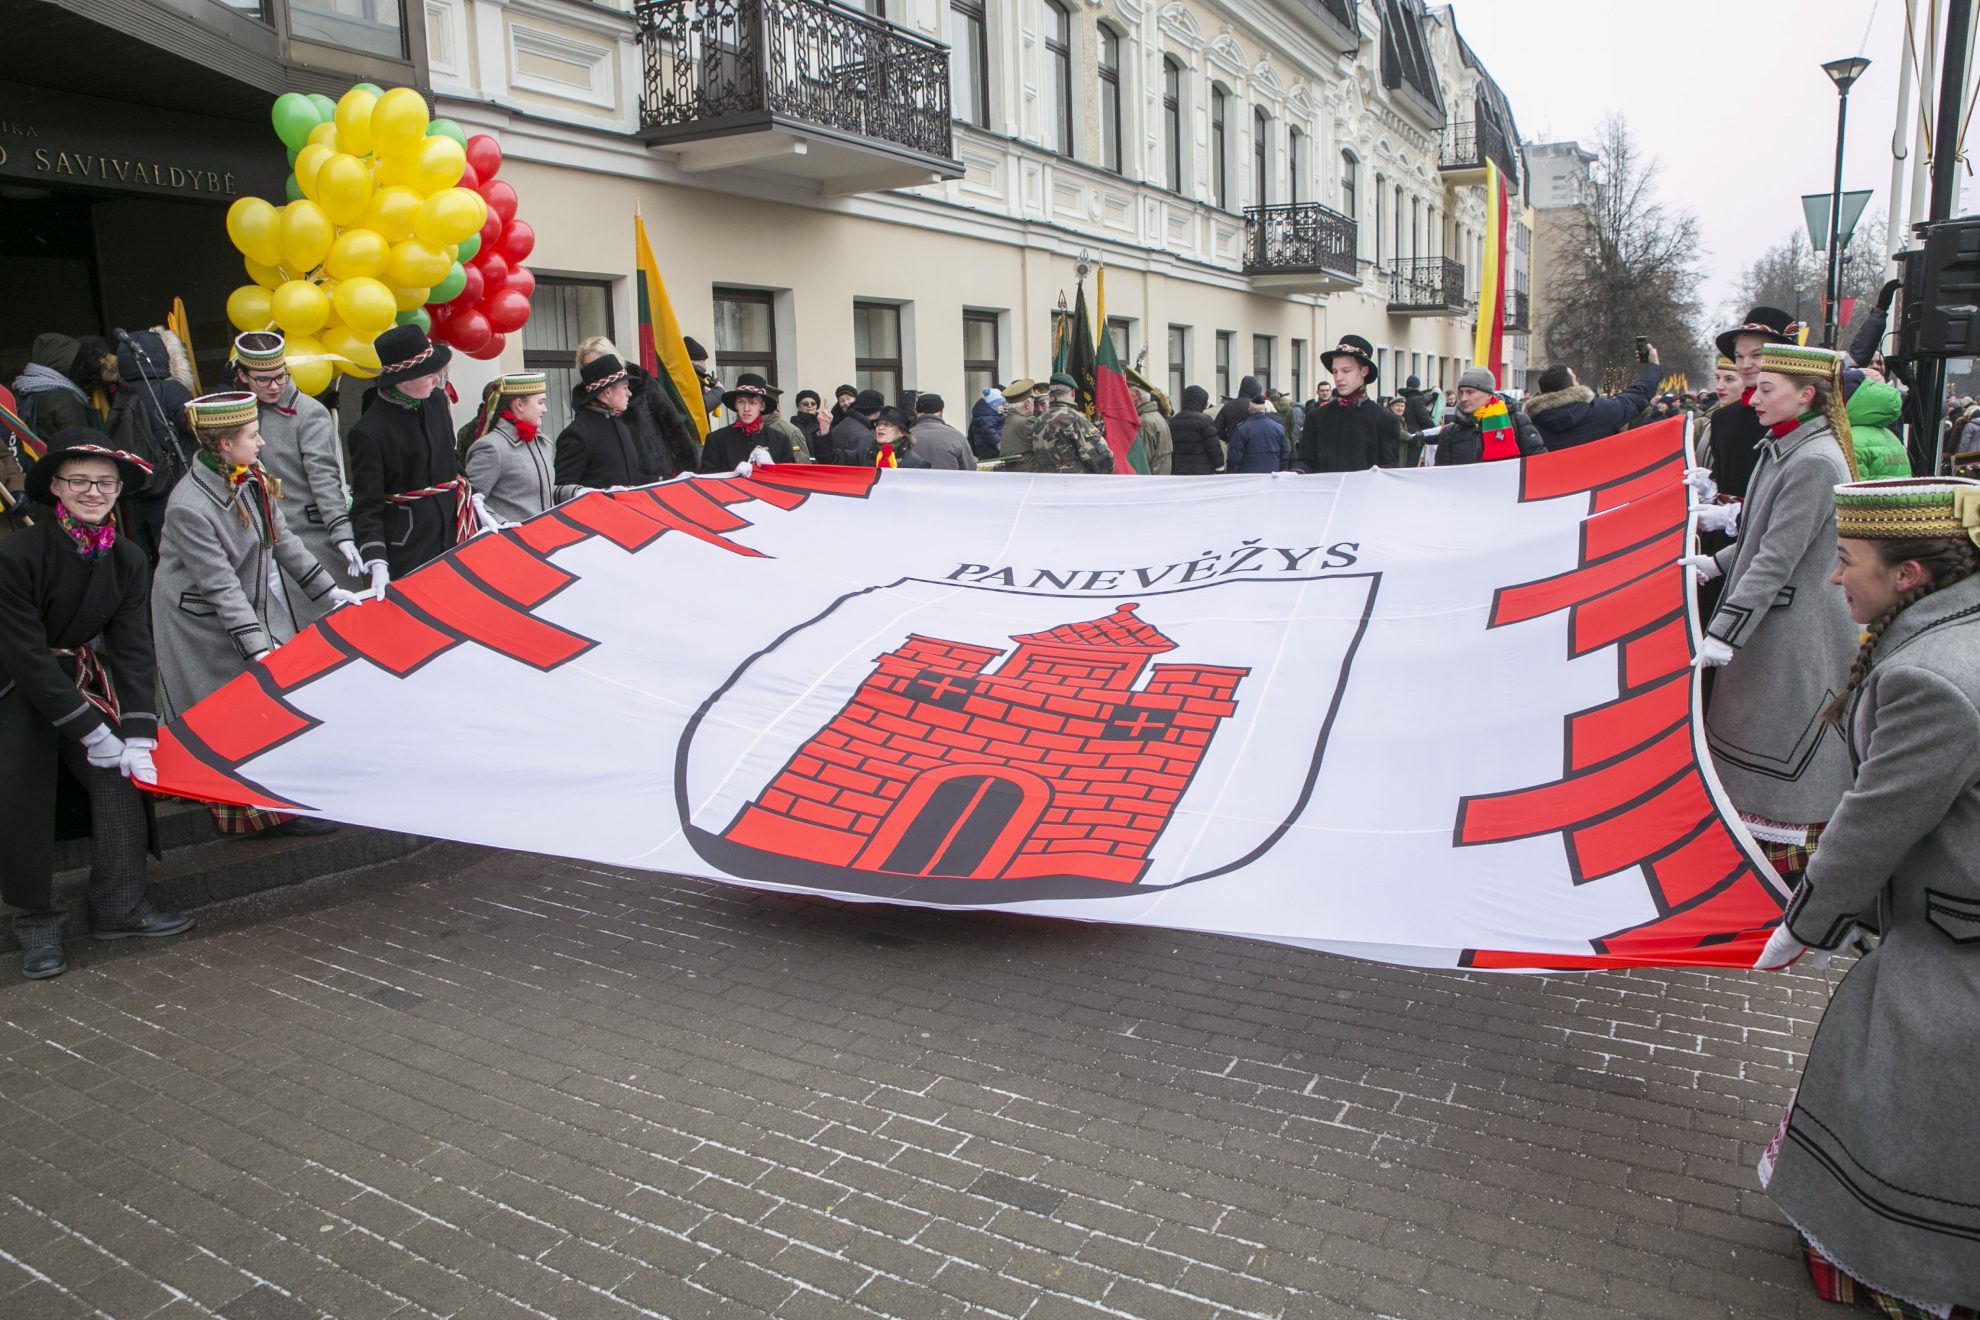 Visa Lietuva vakar šventė prieš šimtą metų atkurtos valstybės gimtadienį. Į šią šventę nuo pat ryto vieningai įsijungė ir Panevėžio miesto bei rajono gyventojai.